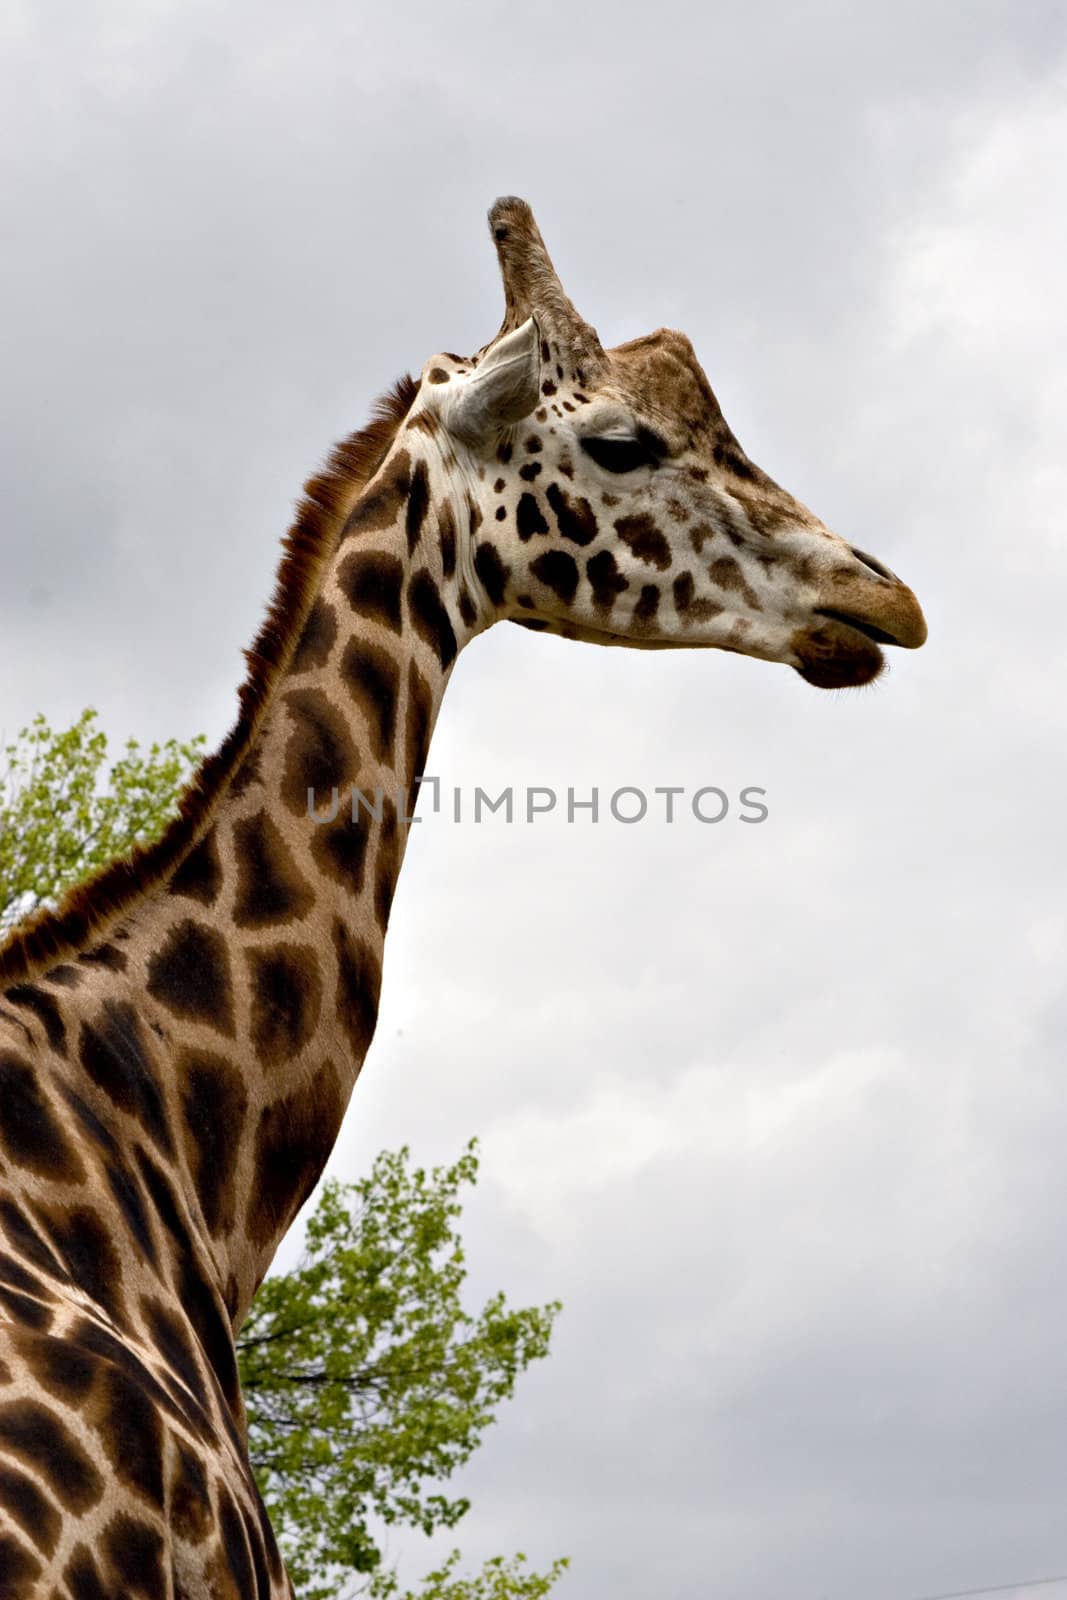 A giraffe seen from behind